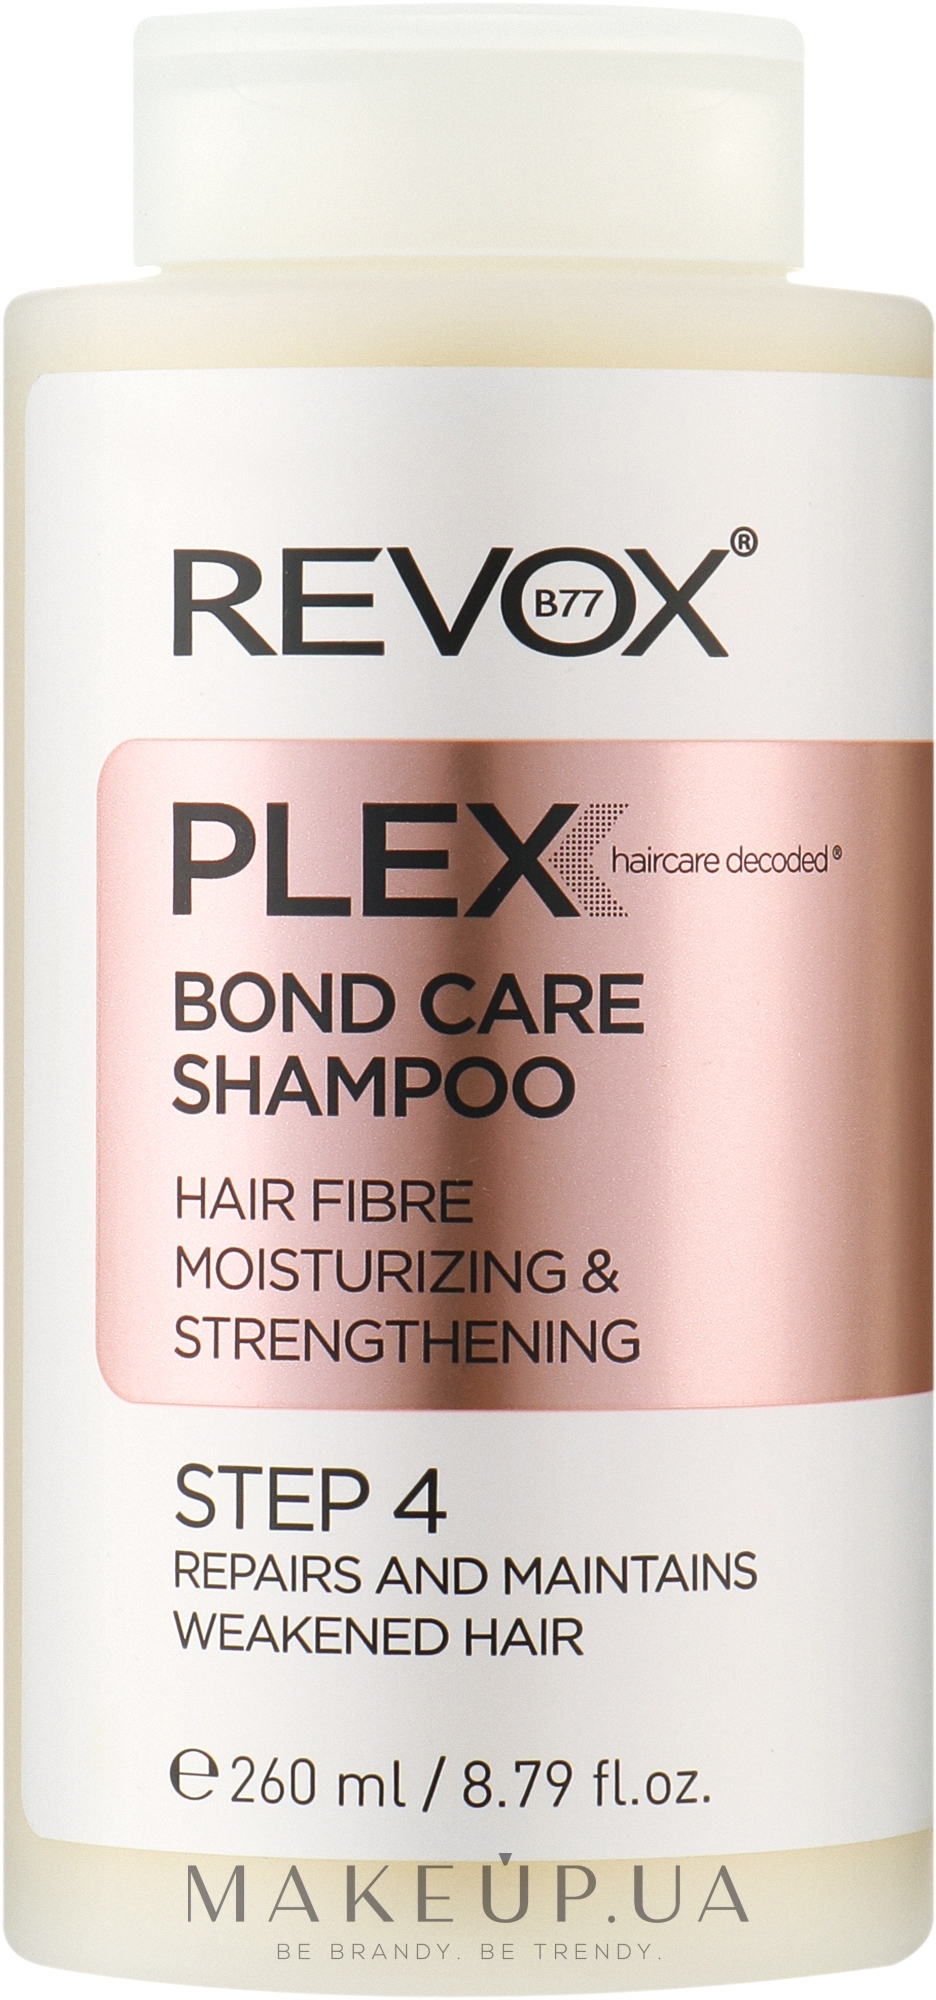 Шампунь для зволоження і зміцнення волосся, крок 4 - Revox B77 Plex Bond Care Shampoo STEP 4 — фото 260ml